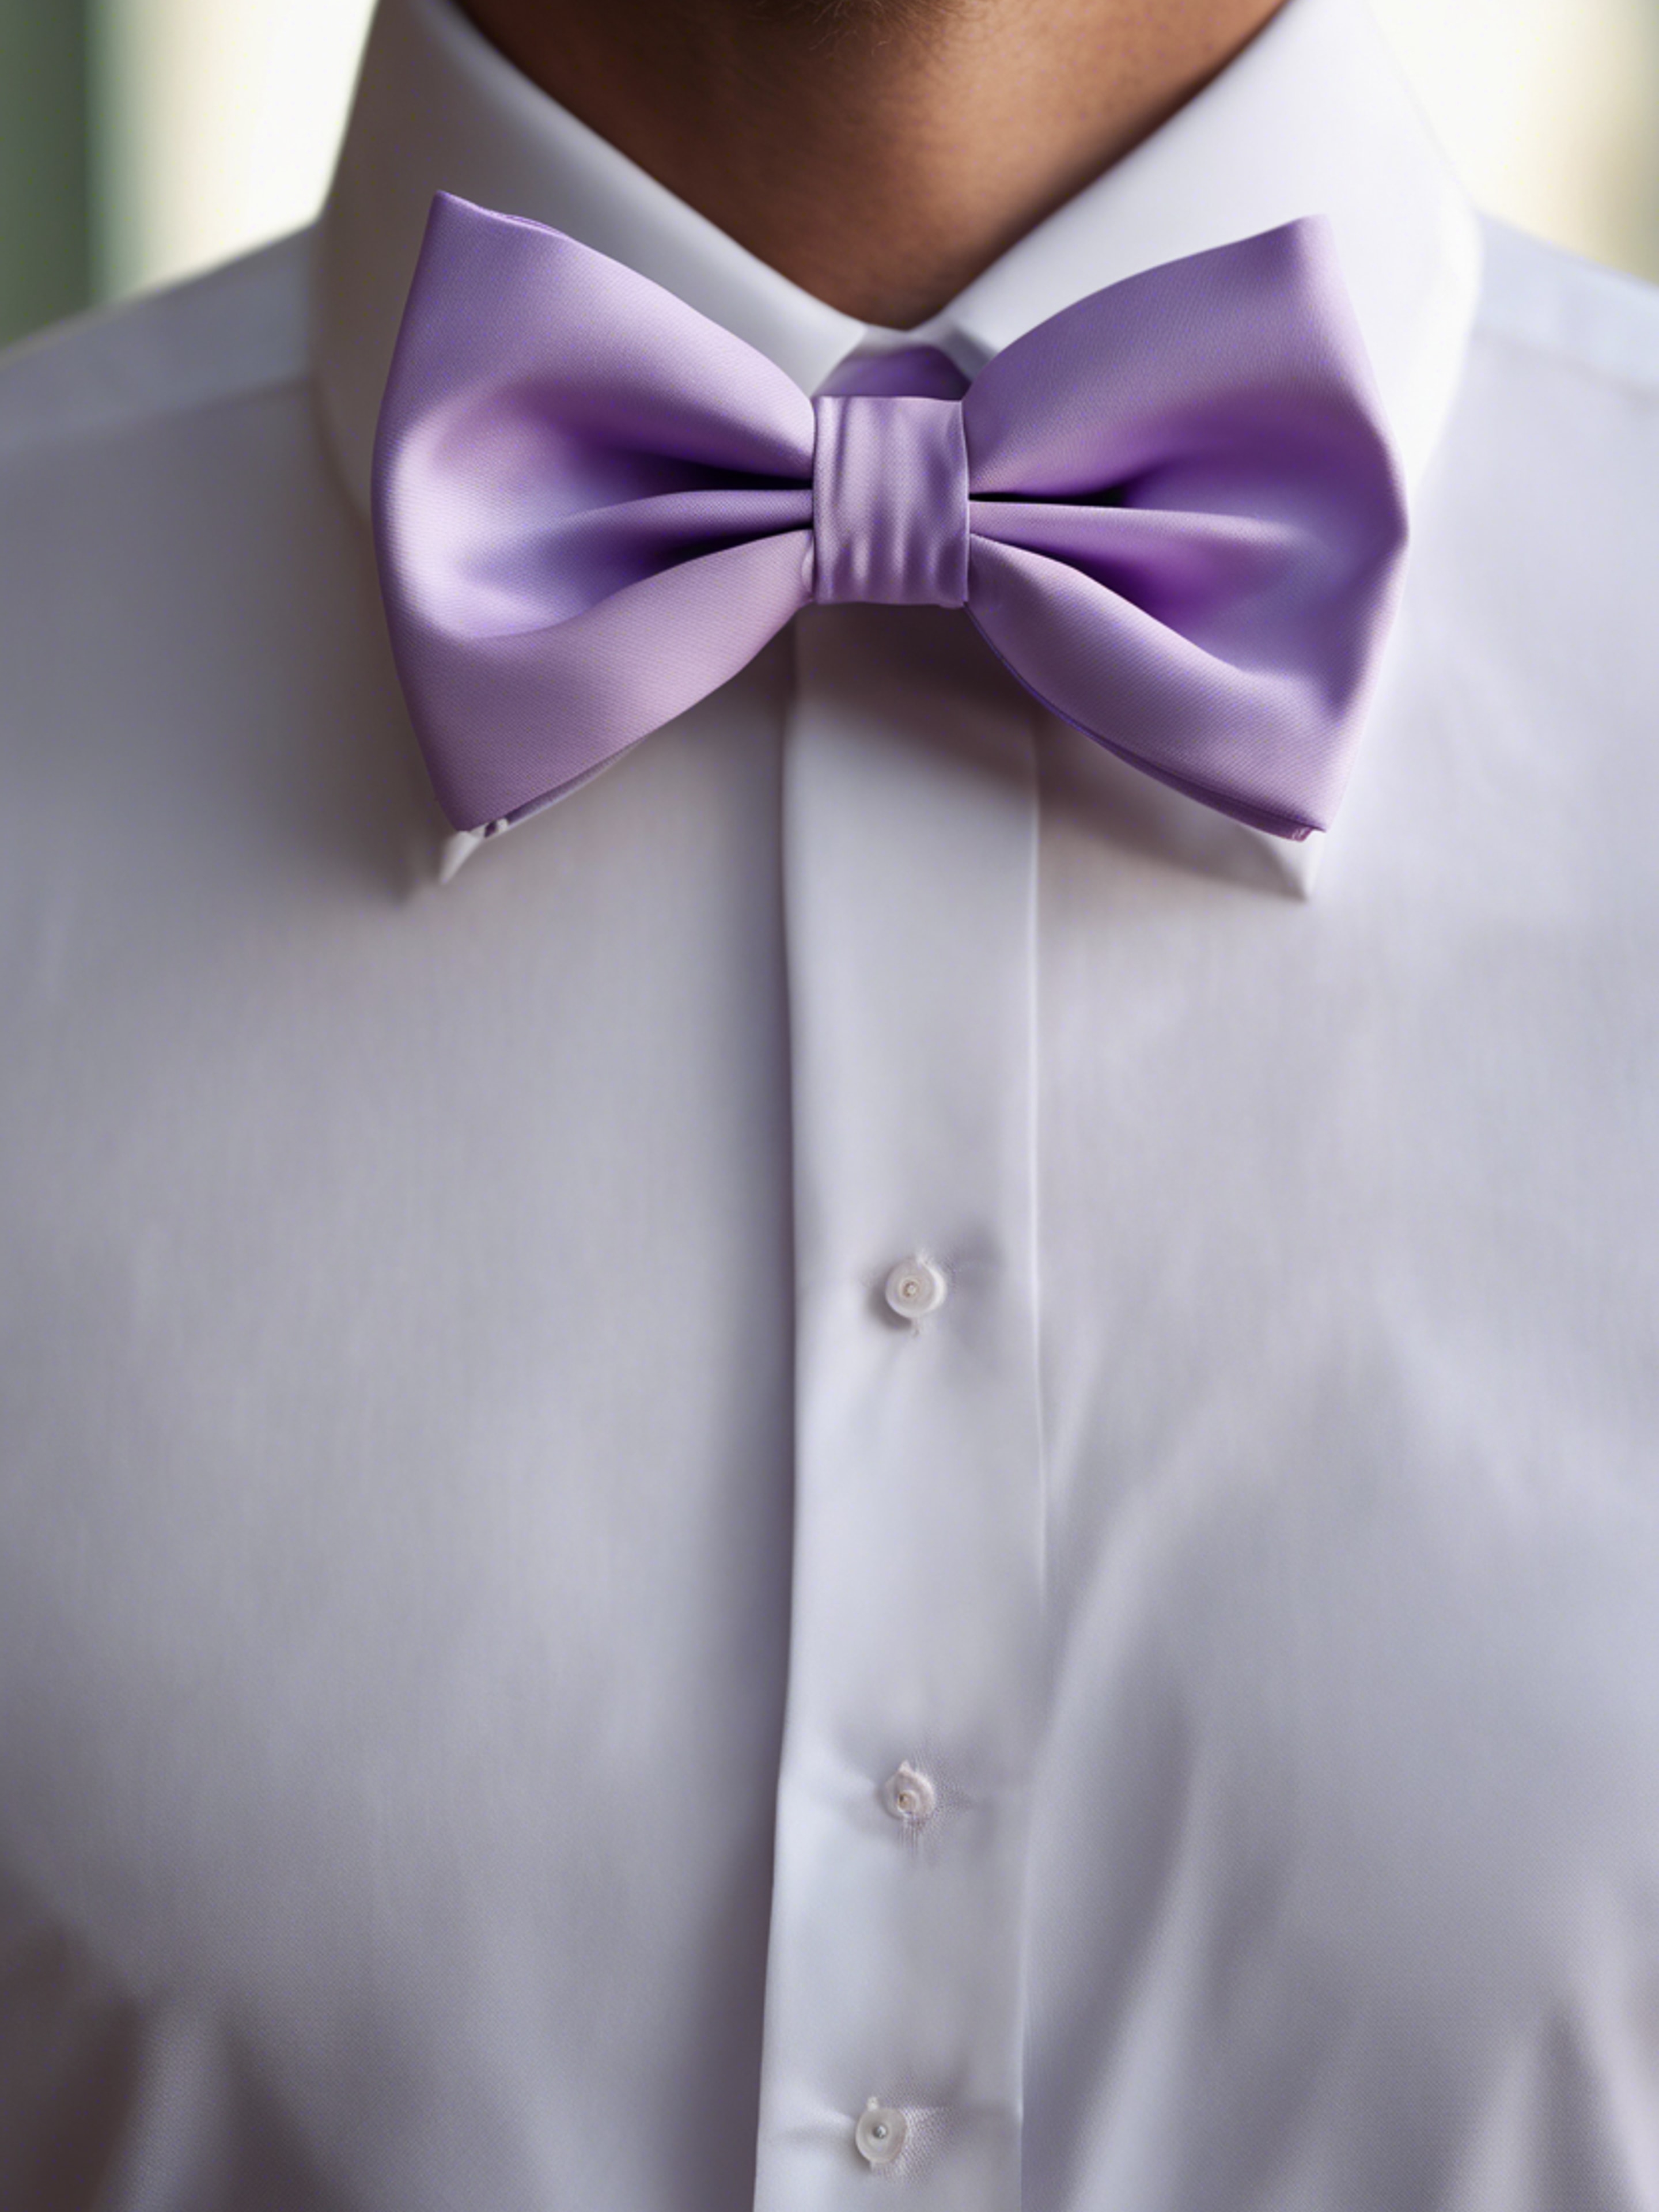 A preppy pastel purple bow tie on a crisp white shirt.壁紙[5e87c7412f5947d28f4c]